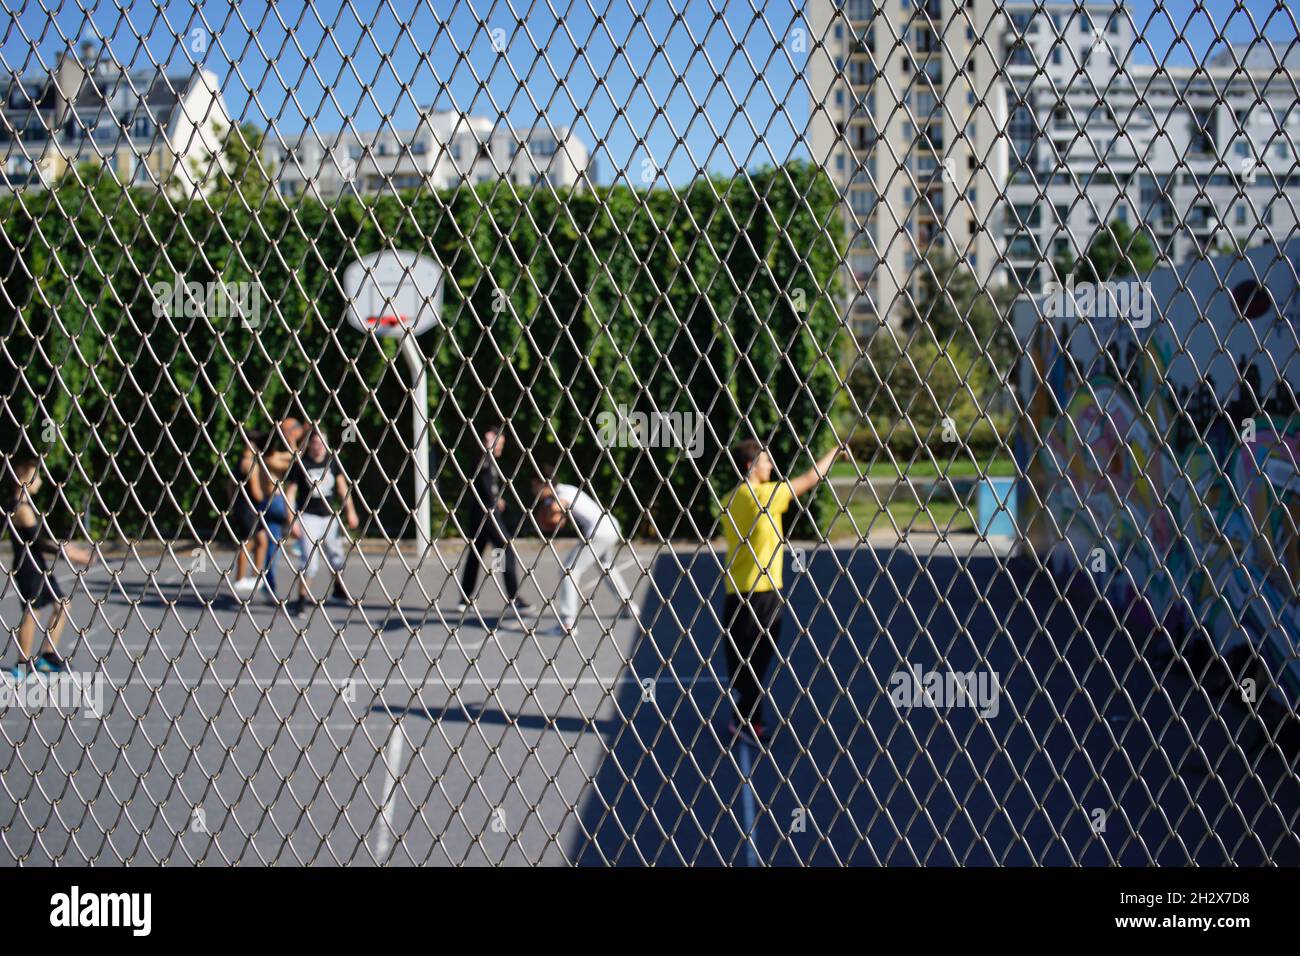 Les enfants jouent au basket-ball dans un terrain clos, sport aux Jardins d’Éole, 20 rue du Département, 75018 Paris, France Banque D'Images